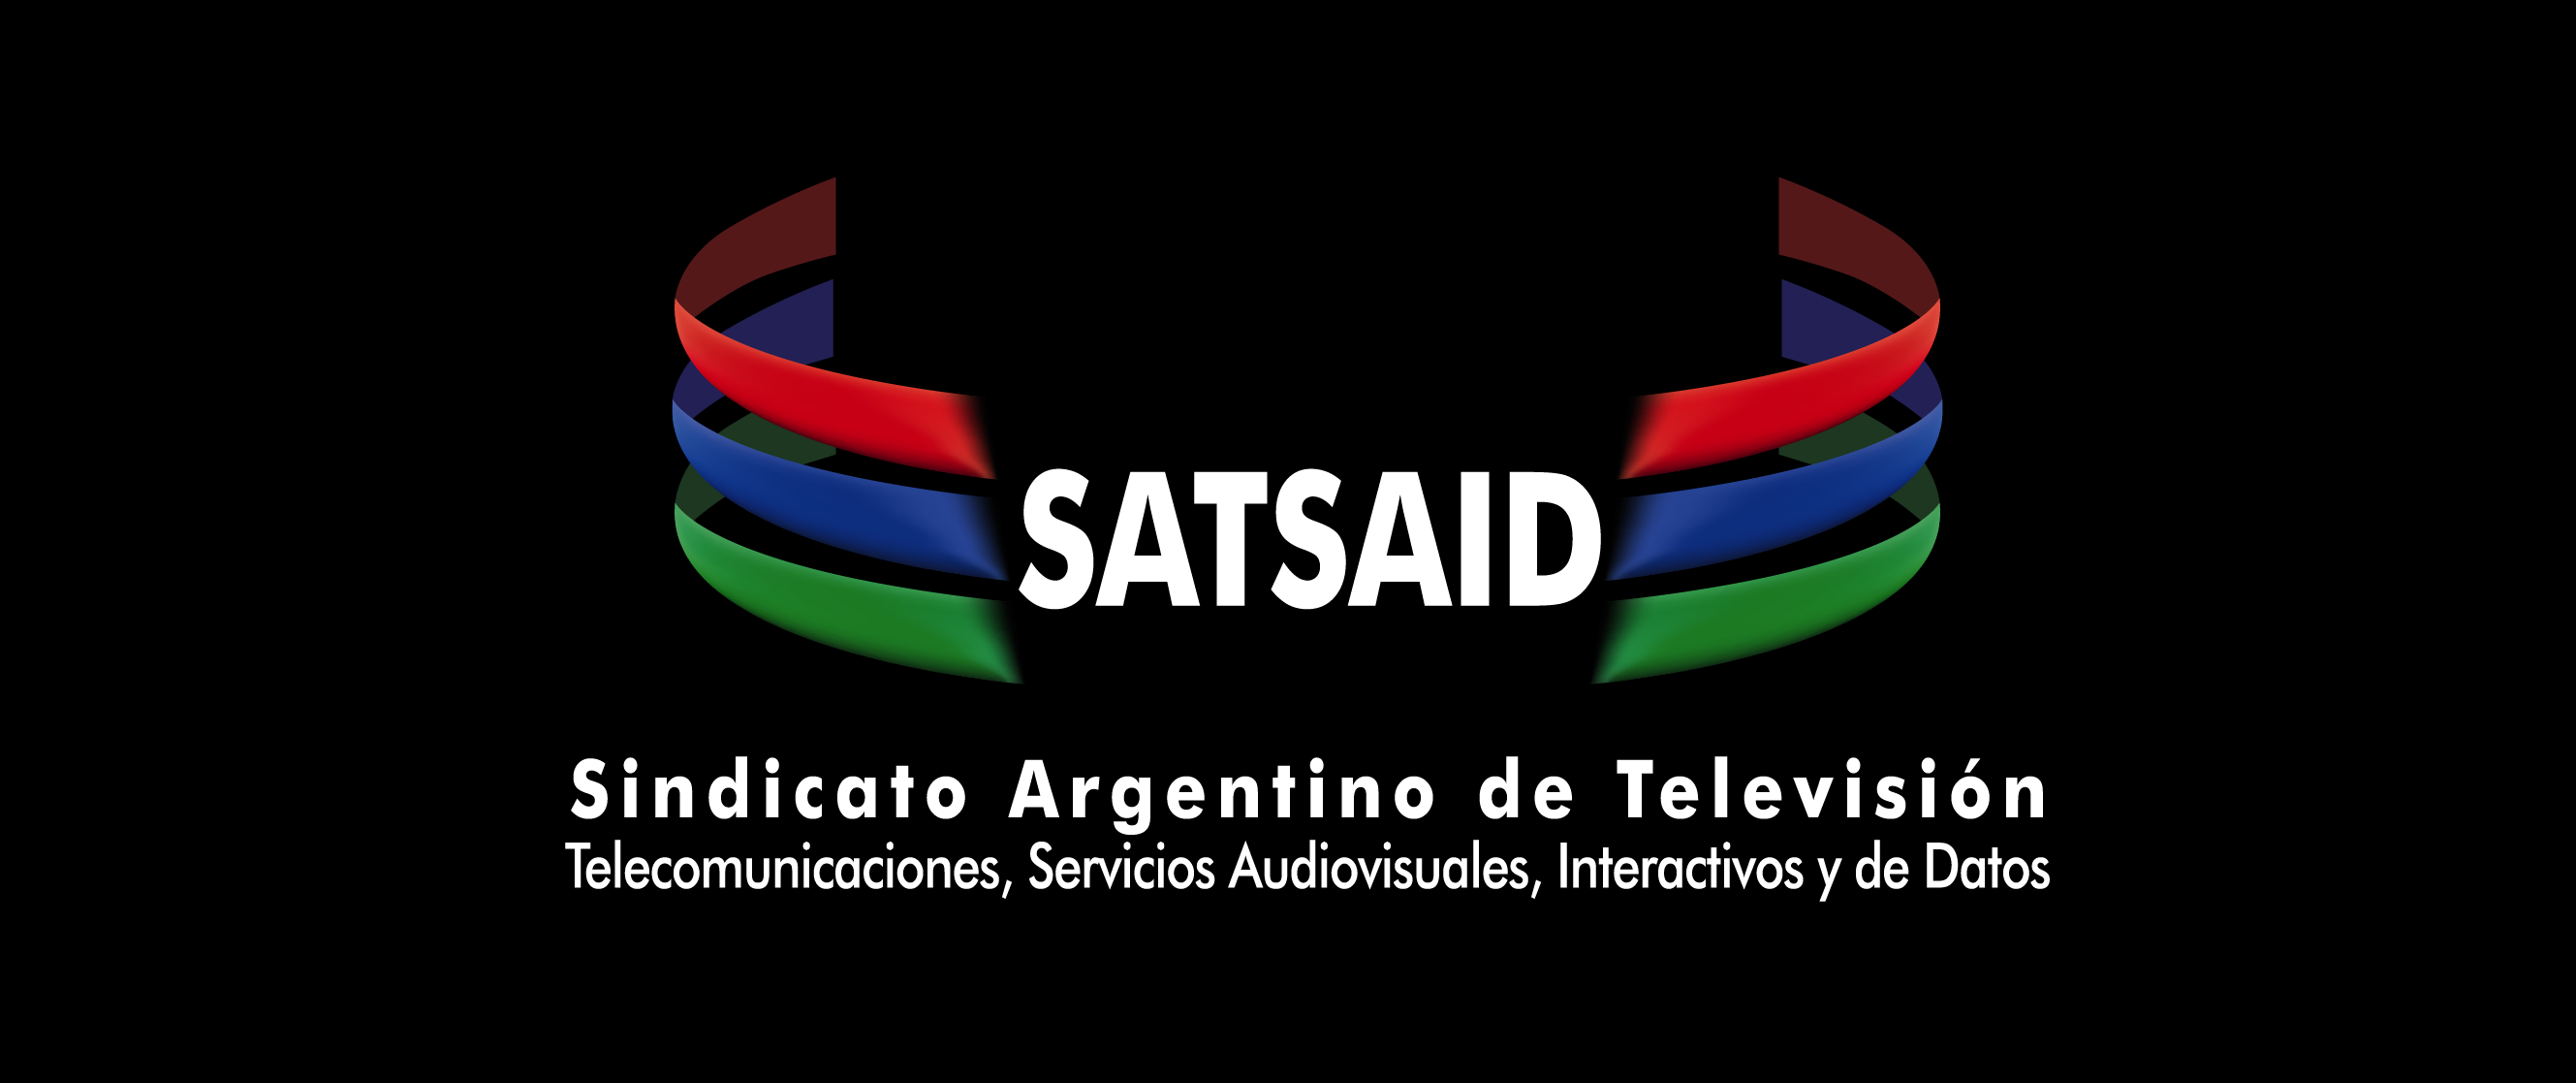 ATVC: EL SATSAID RECHAZÓ POR INSUFICIENTE LA PROPUESTA EMPRESARIA PARA LOS CIRCUITOS CERRADOS Y TELECOMUNICACIONES